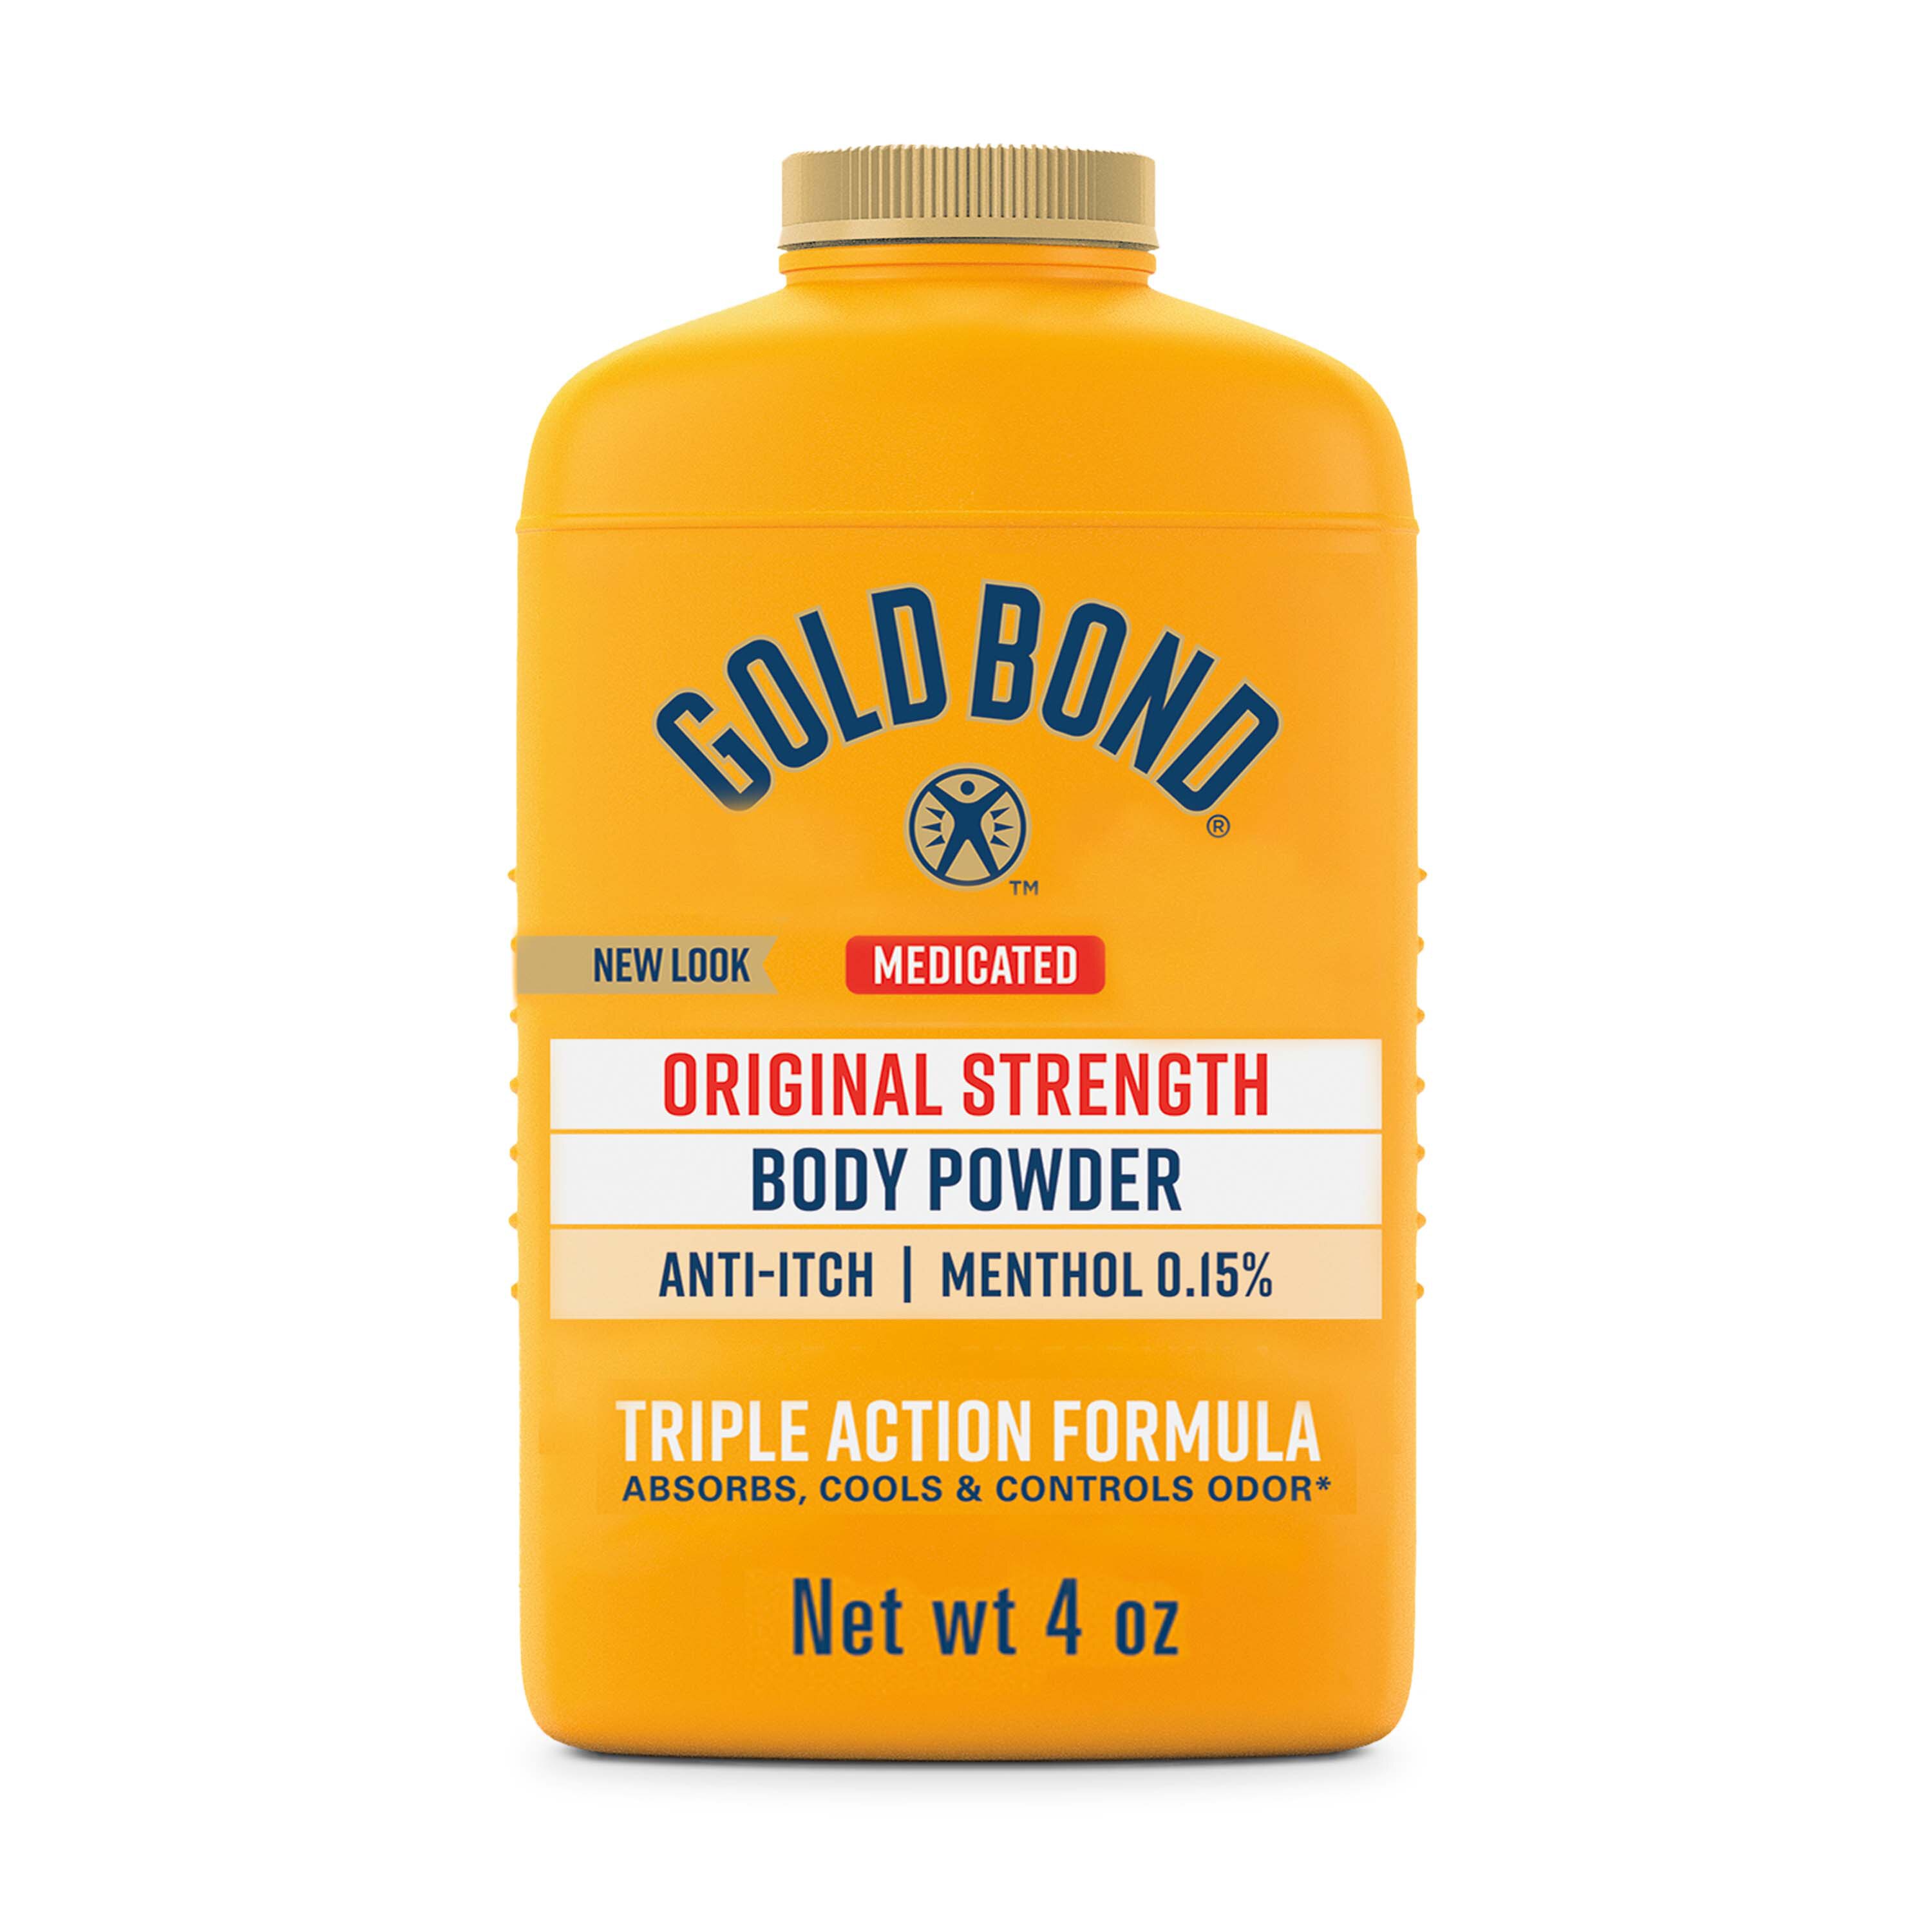 Gold Bond Medicated Original Strength Body Powder, 4 Oz., Talc-Free , CVS